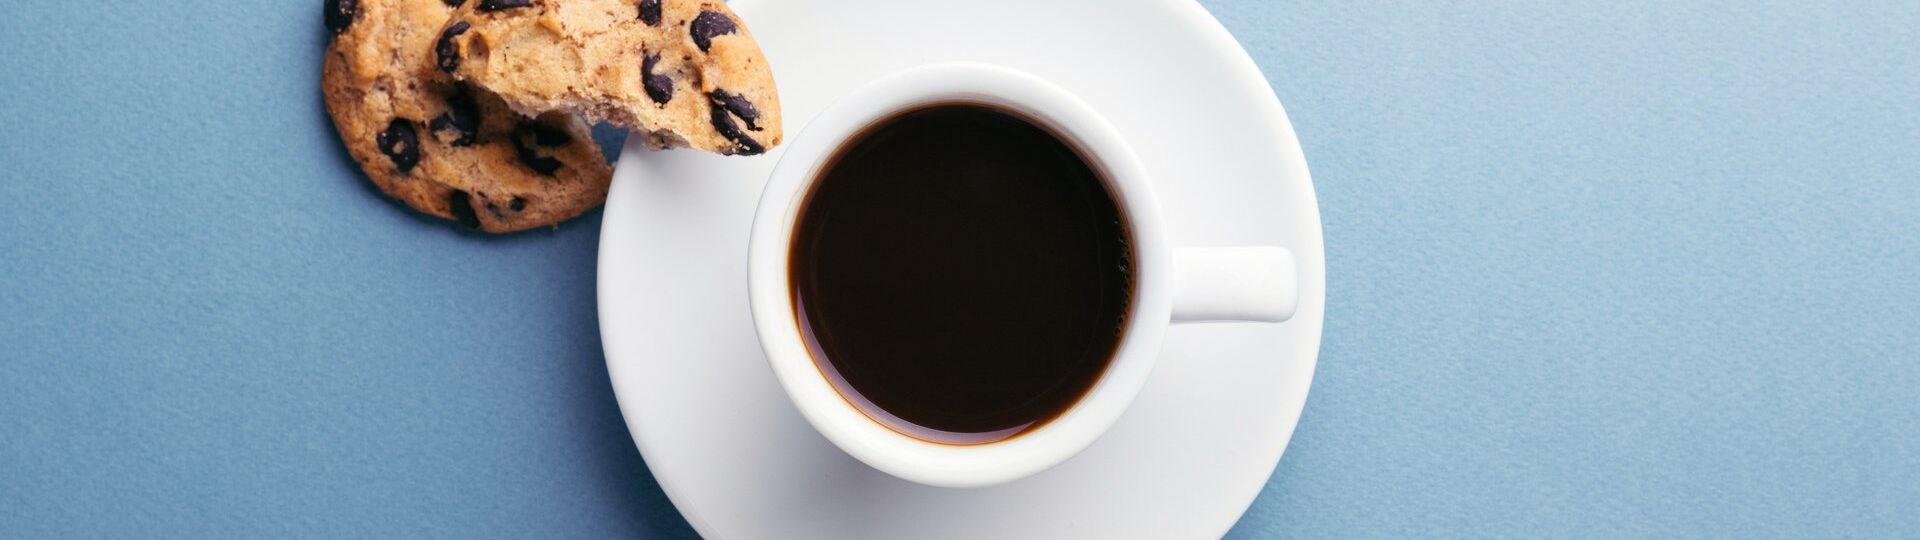 Schwarzer Kaffee serviert mit einem Cookie auf einer Untertasse